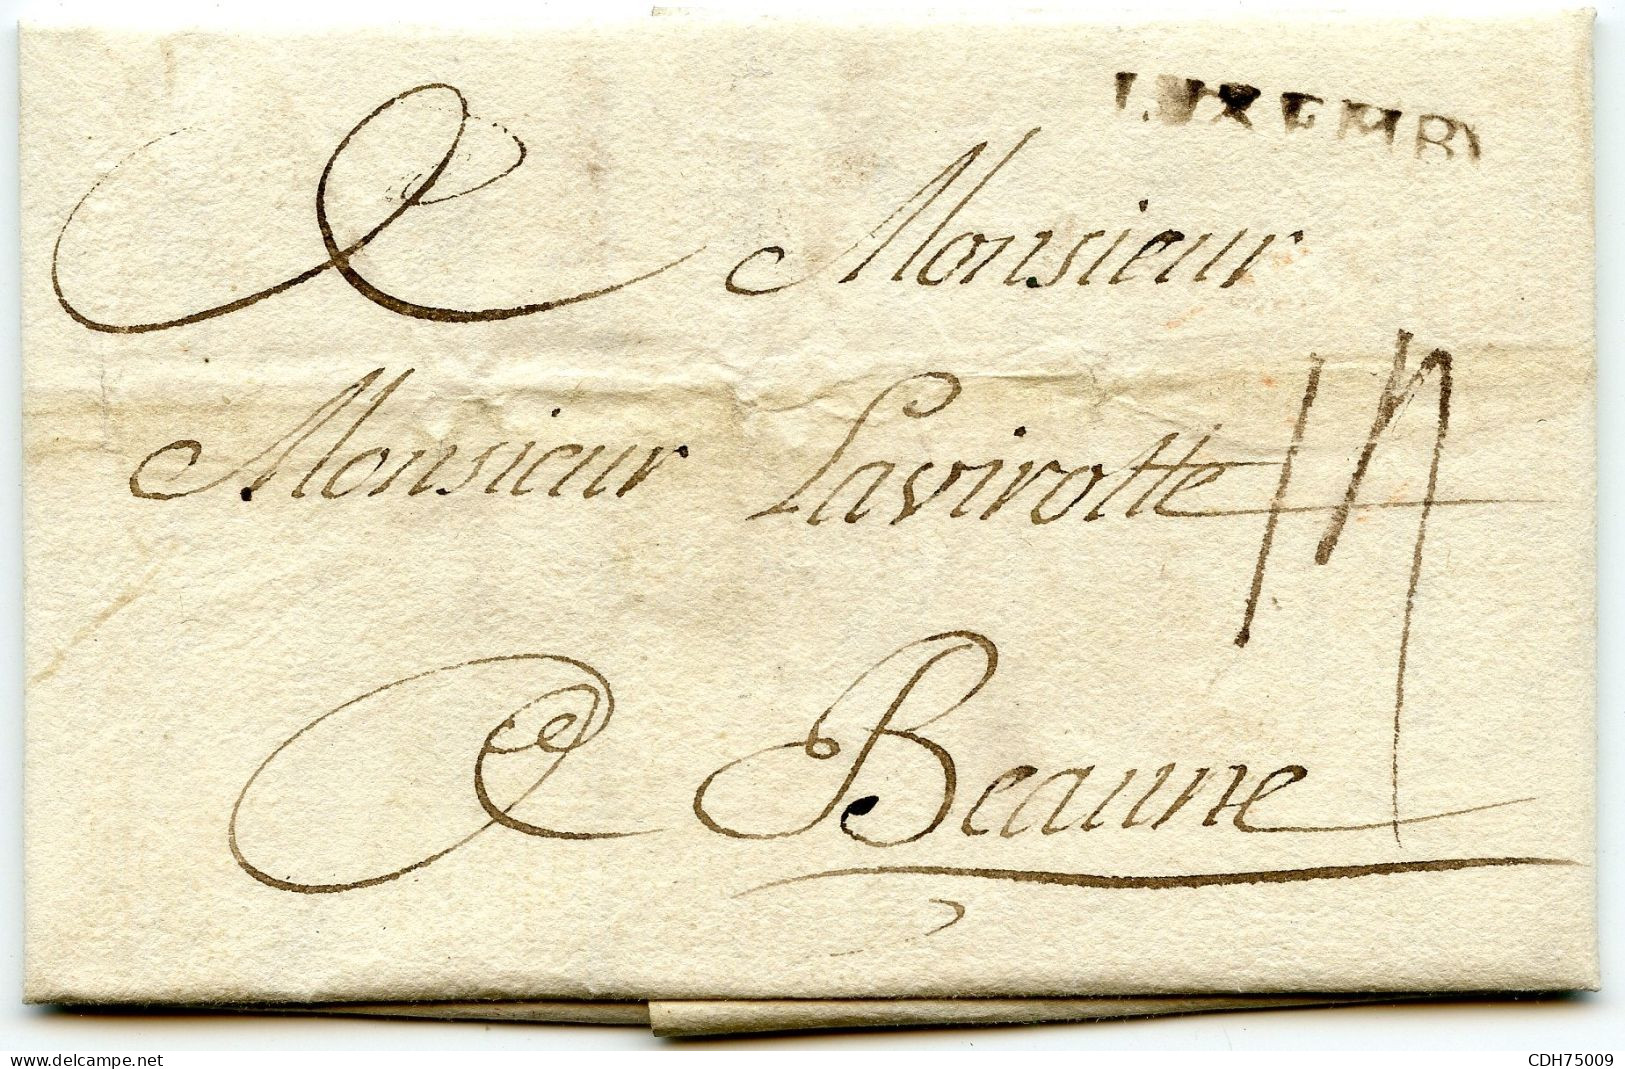 LUXEMBOURG - LUXEMB. AU TAMPON SUR LETTRE AVEC CORRESPONDANCE POUR LA FRANCE, 1759 - ...-1852 Voorfilatelie